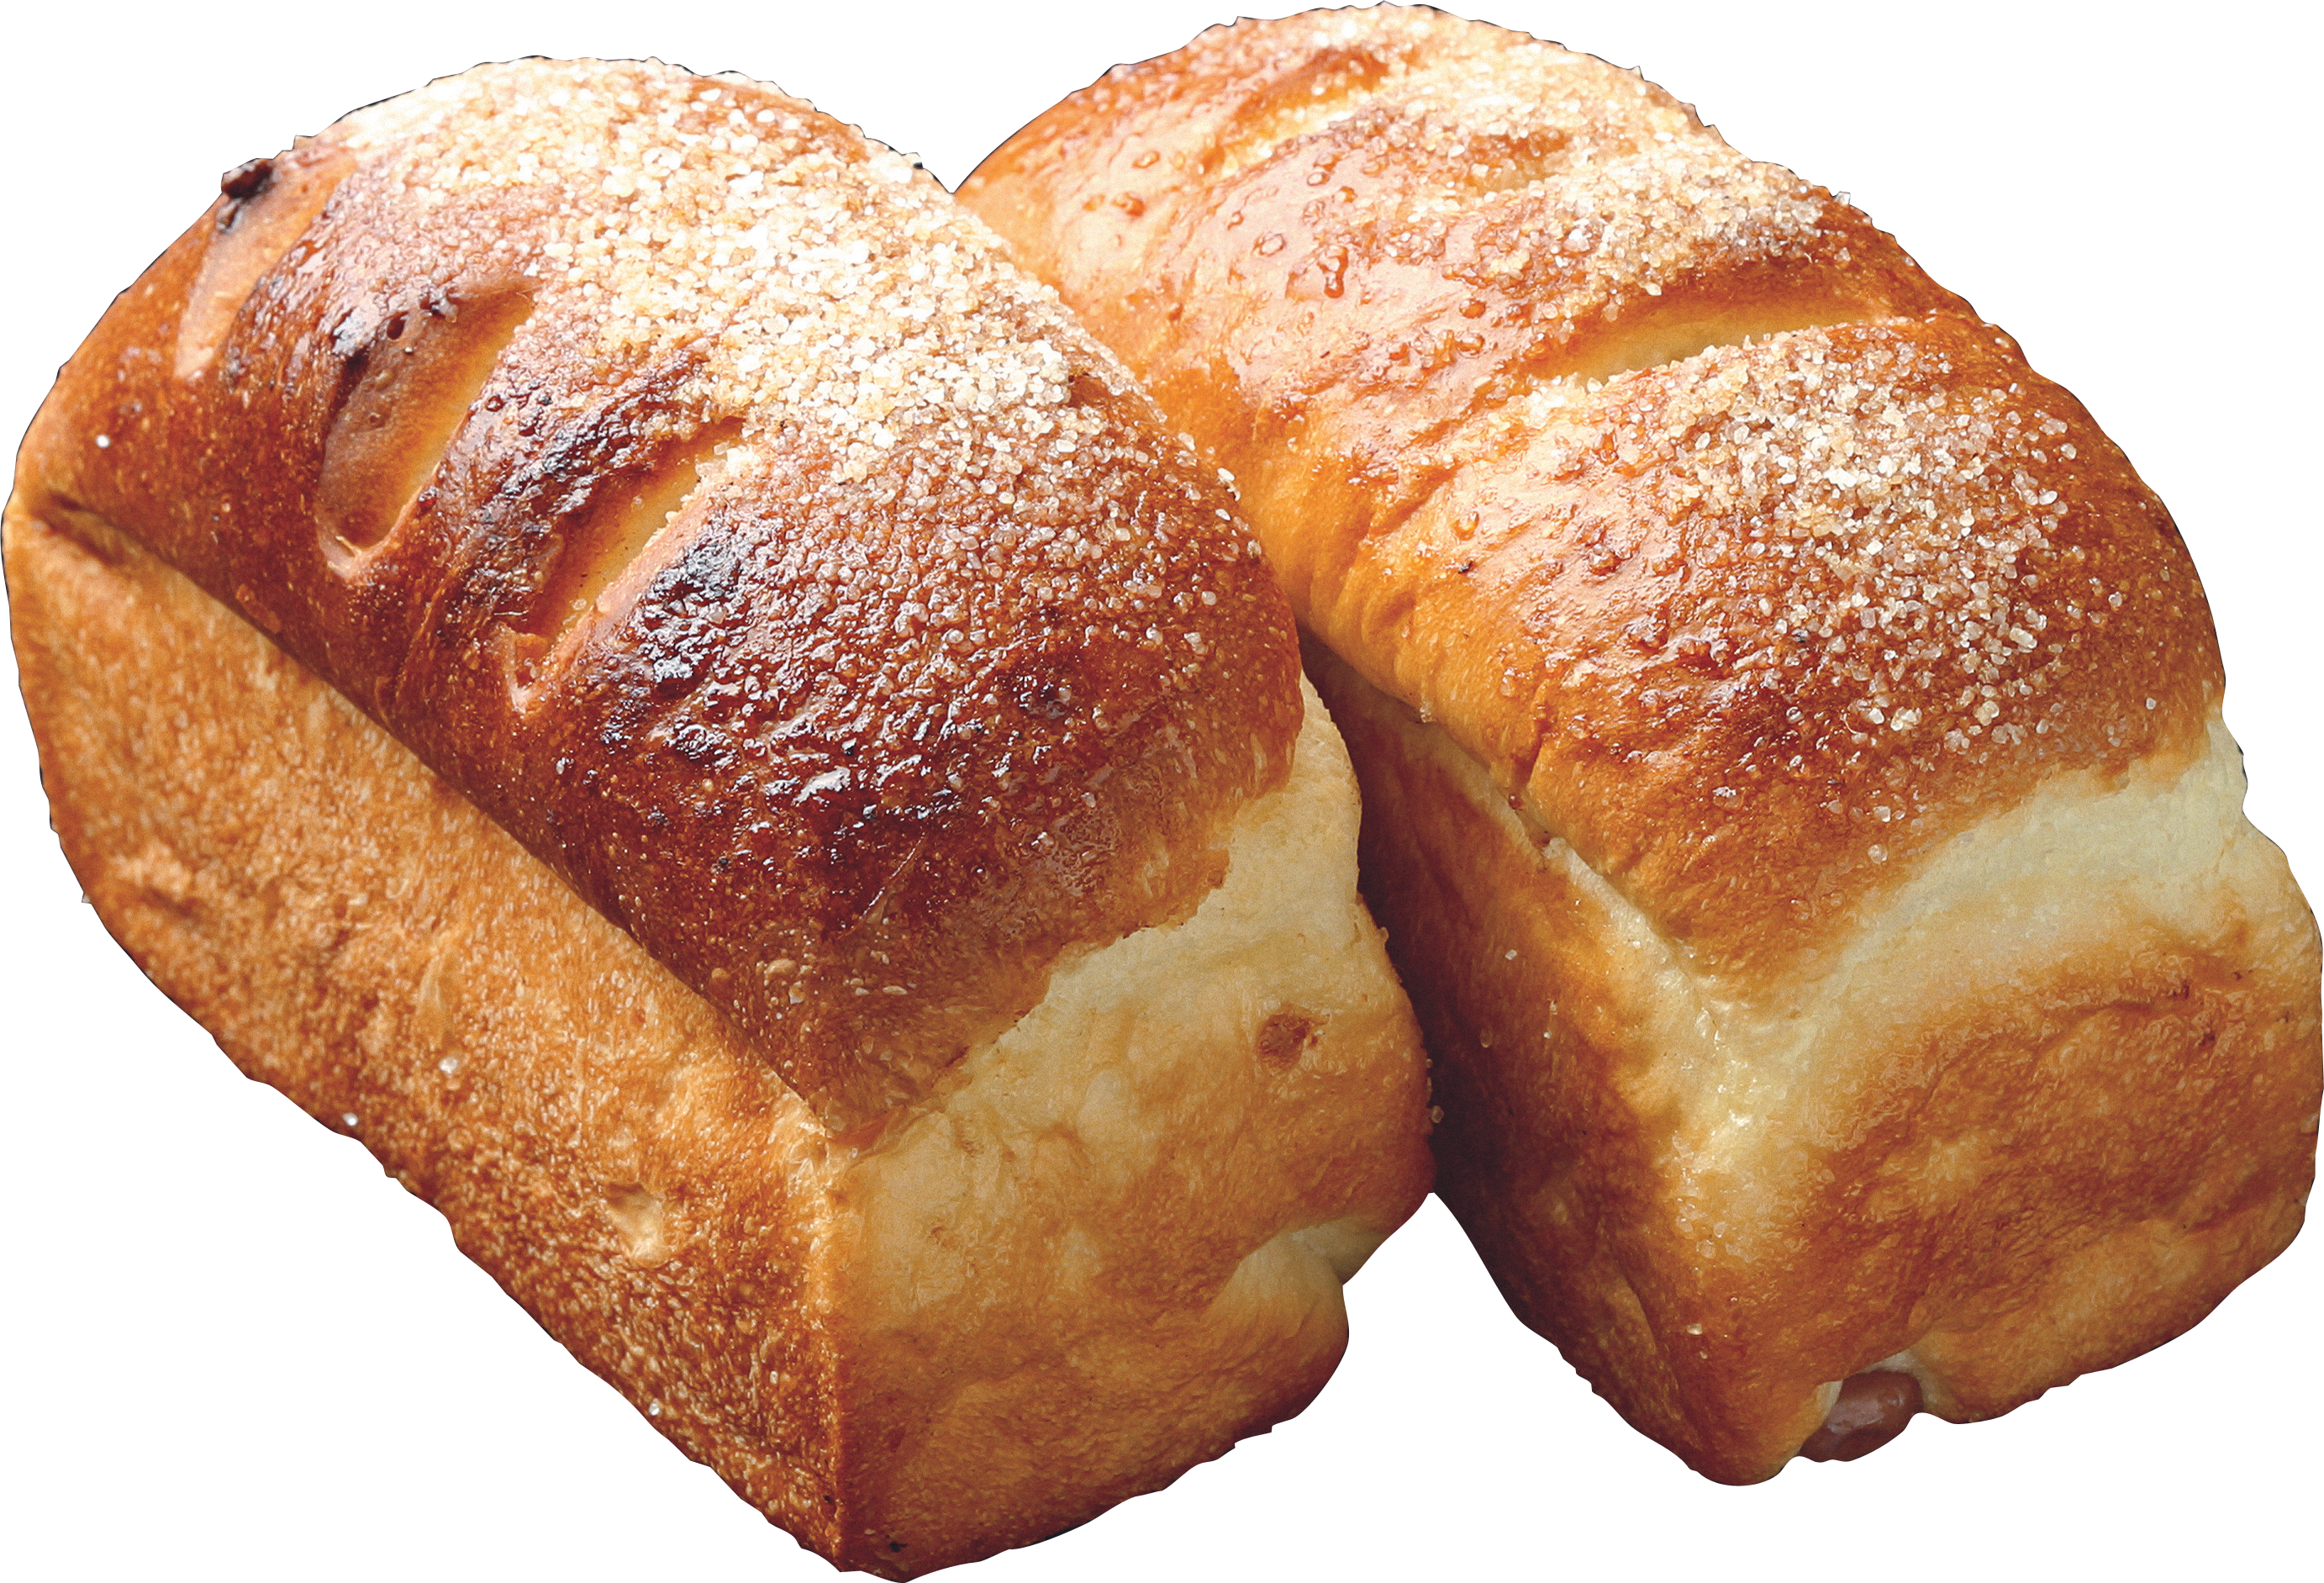 Loaf Bake Bread HQ Image Free PNG Image